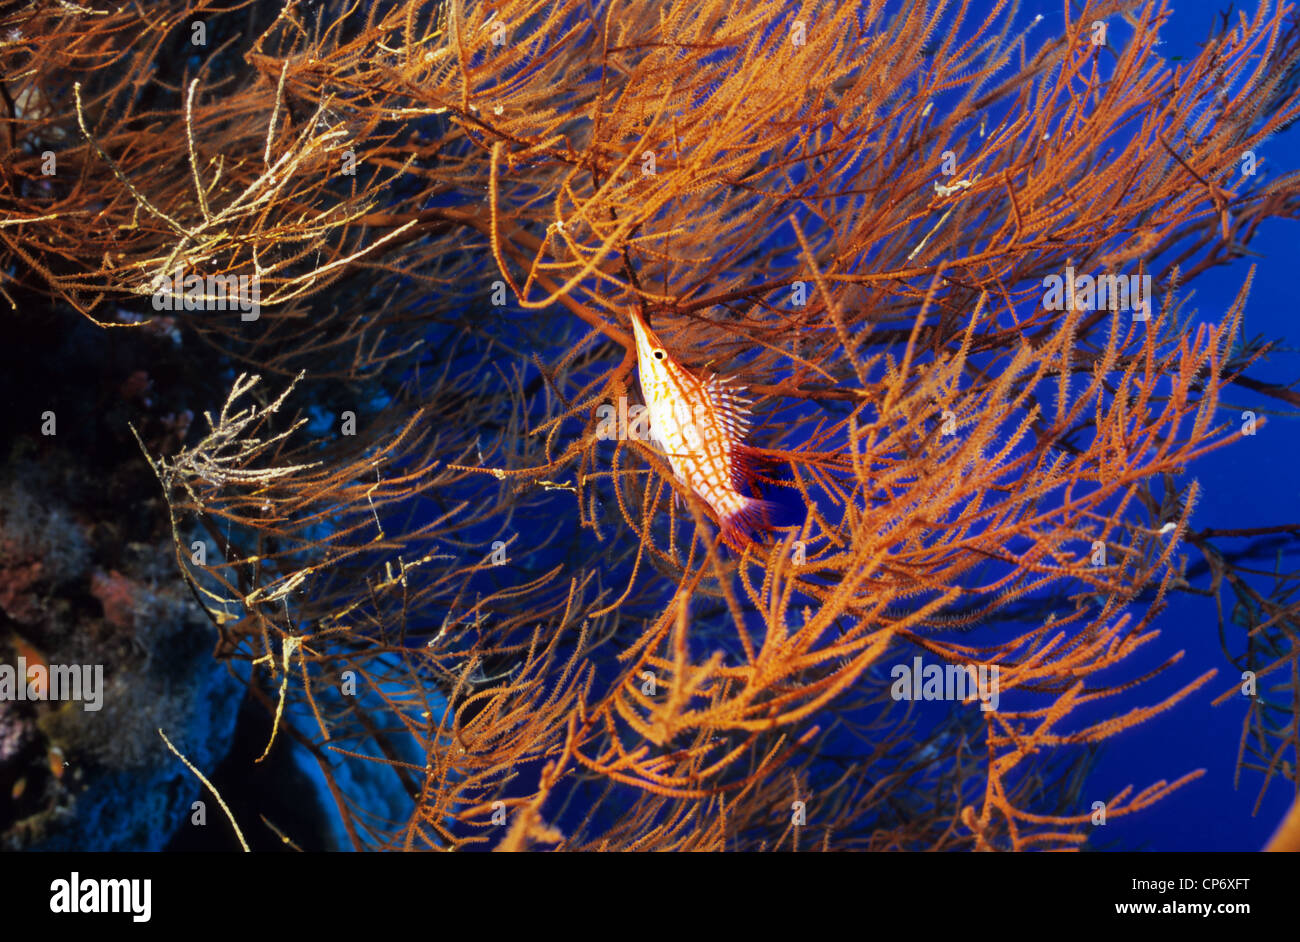 Lange Nase Hawkfish Unterwasser Korallen Taube auf dem Dach. Nur in großen Gorgonien oder schwarzen Korallen gefunden. Stockfoto